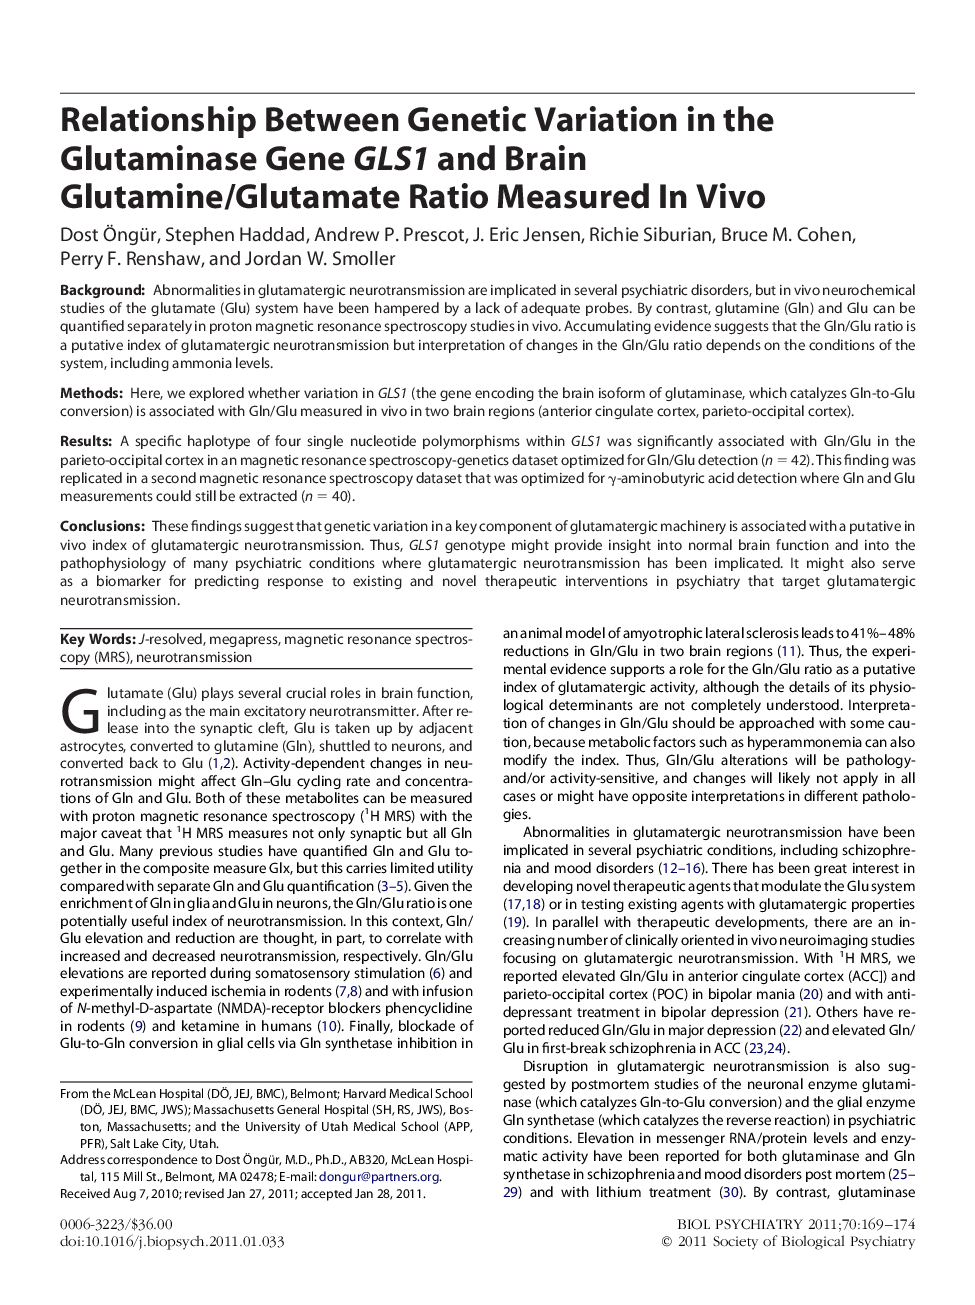 Relationship Between Genetic Variation in the Glutaminase Gene GLS1 and Brain Glutamine/Glutamate Ratio Measured In Vivo